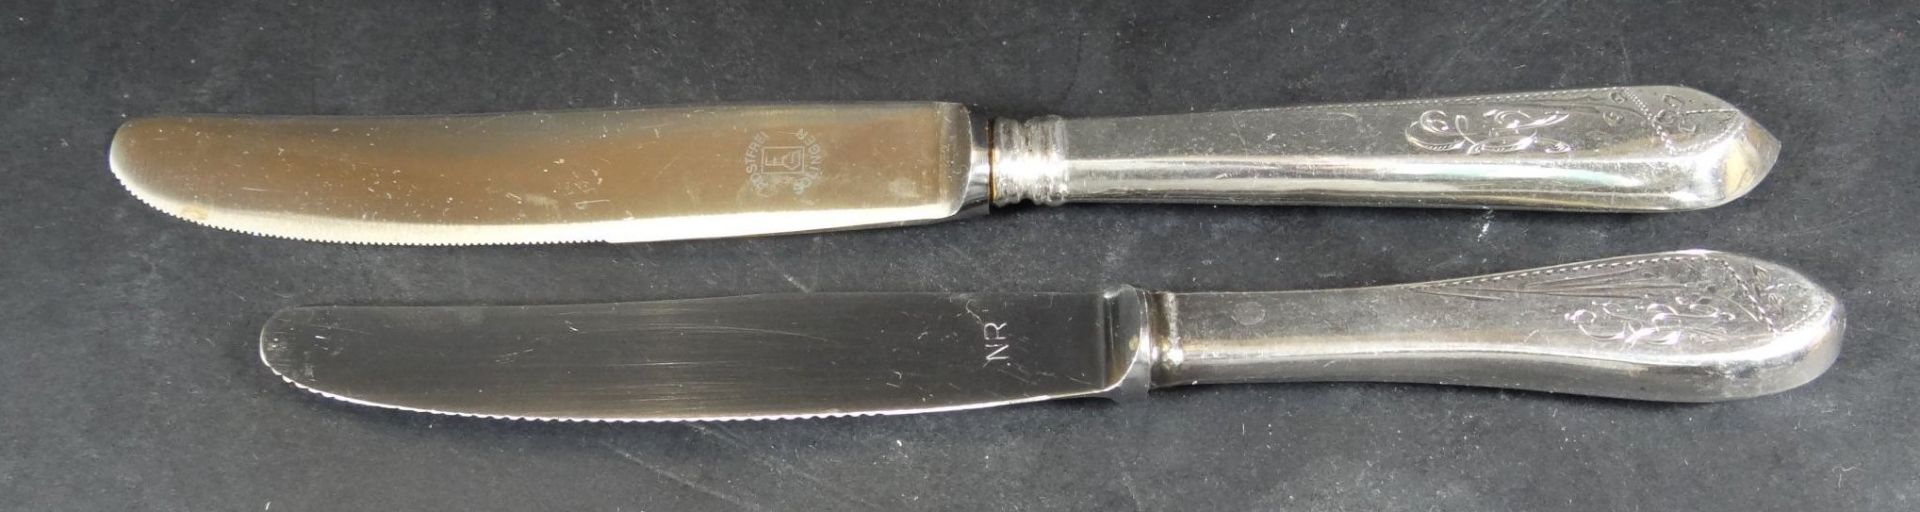 4 grosse, 5 kleine Messer mit Silbergriff-800- und Gravur, L-23.5 und 20 cm, - Image 2 of 6